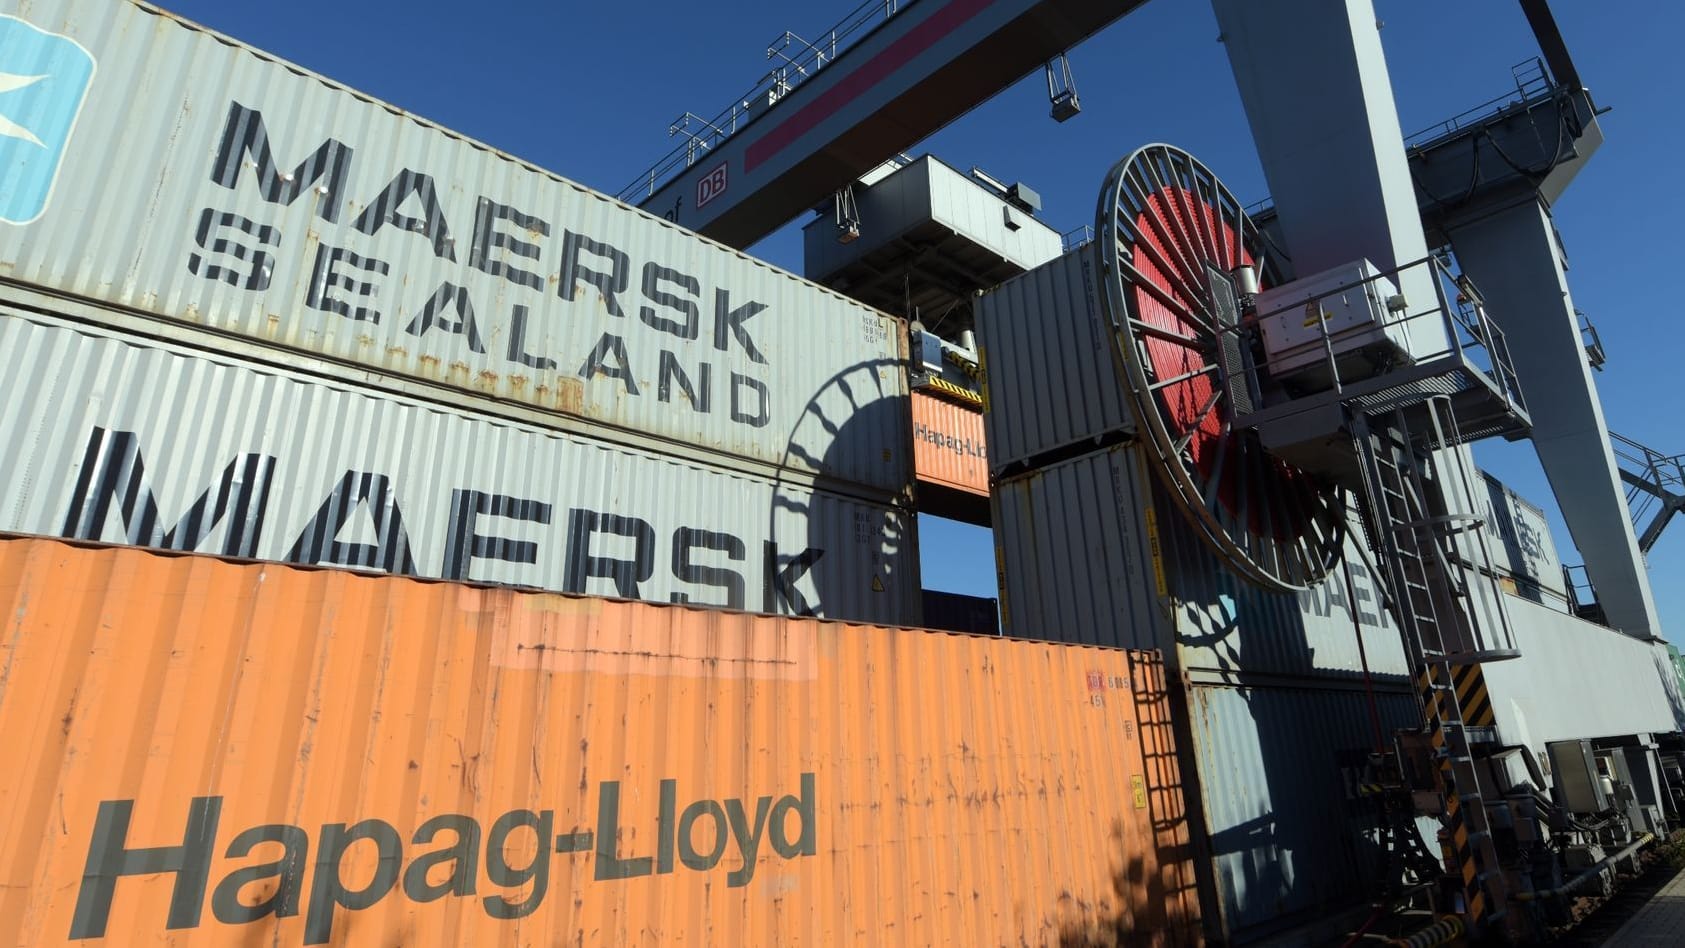 Reedereien Hapag-Lloyd und Maersk starten ab 2025 neue Kooperation